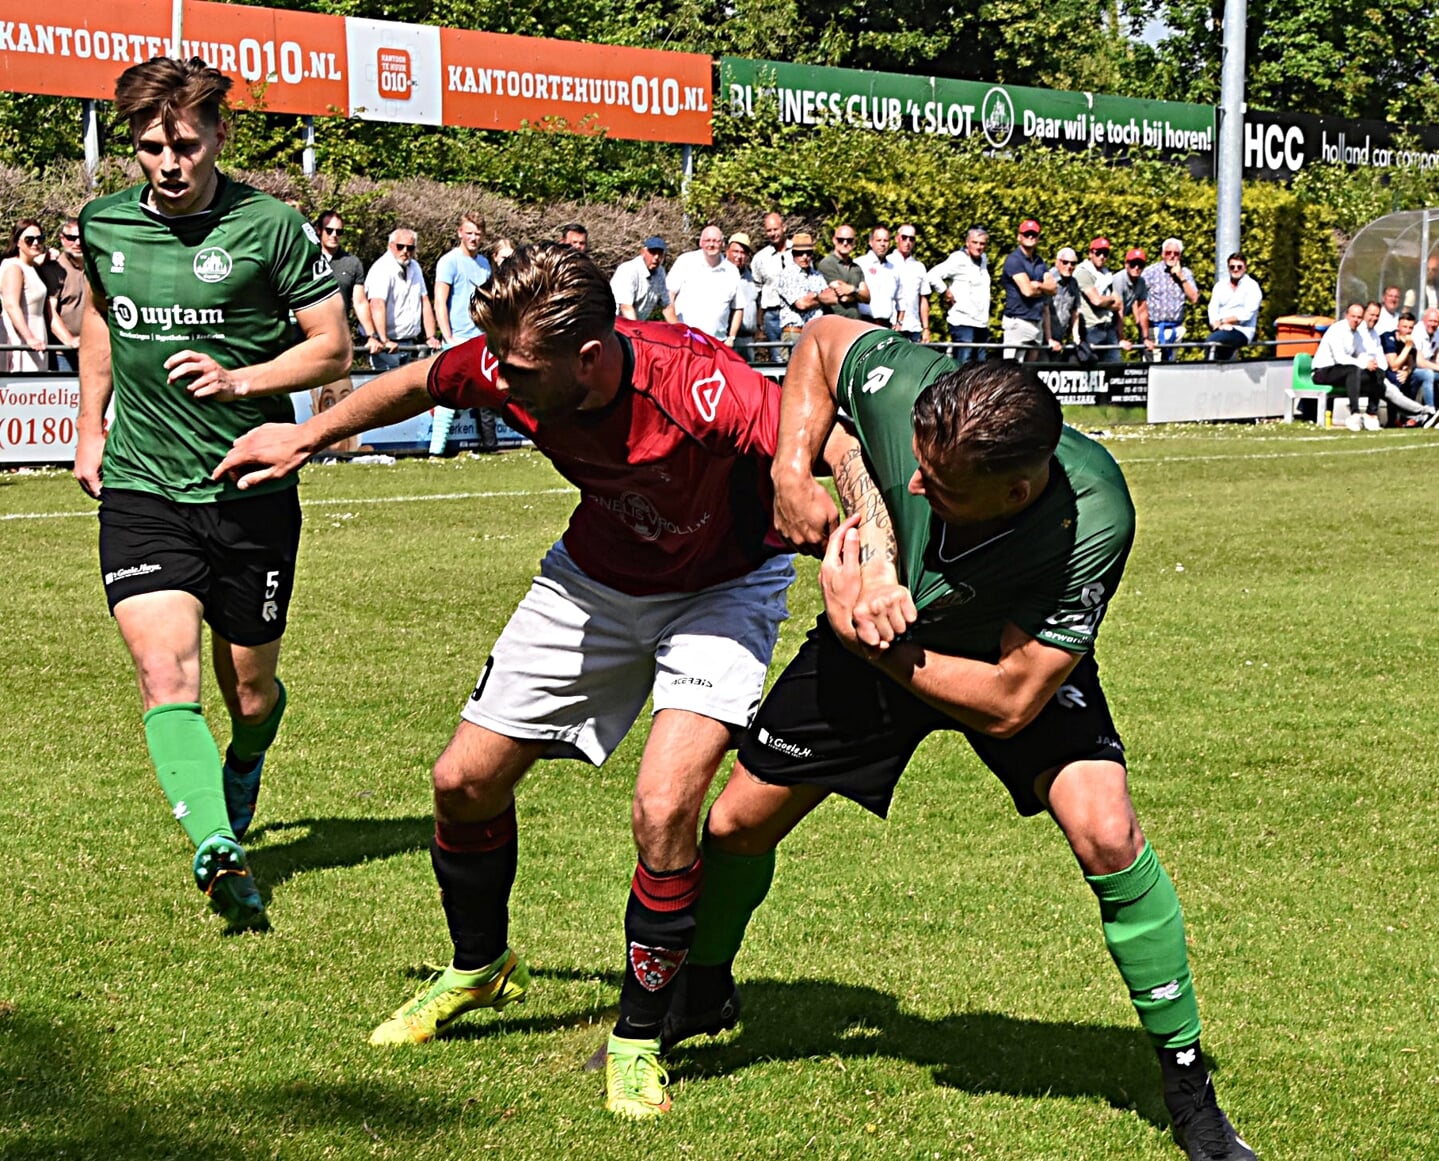 Doelpuntenmaker Dennis Bakker hier in de tang bij twee verdedigers. | Foto: Piet van Kampen